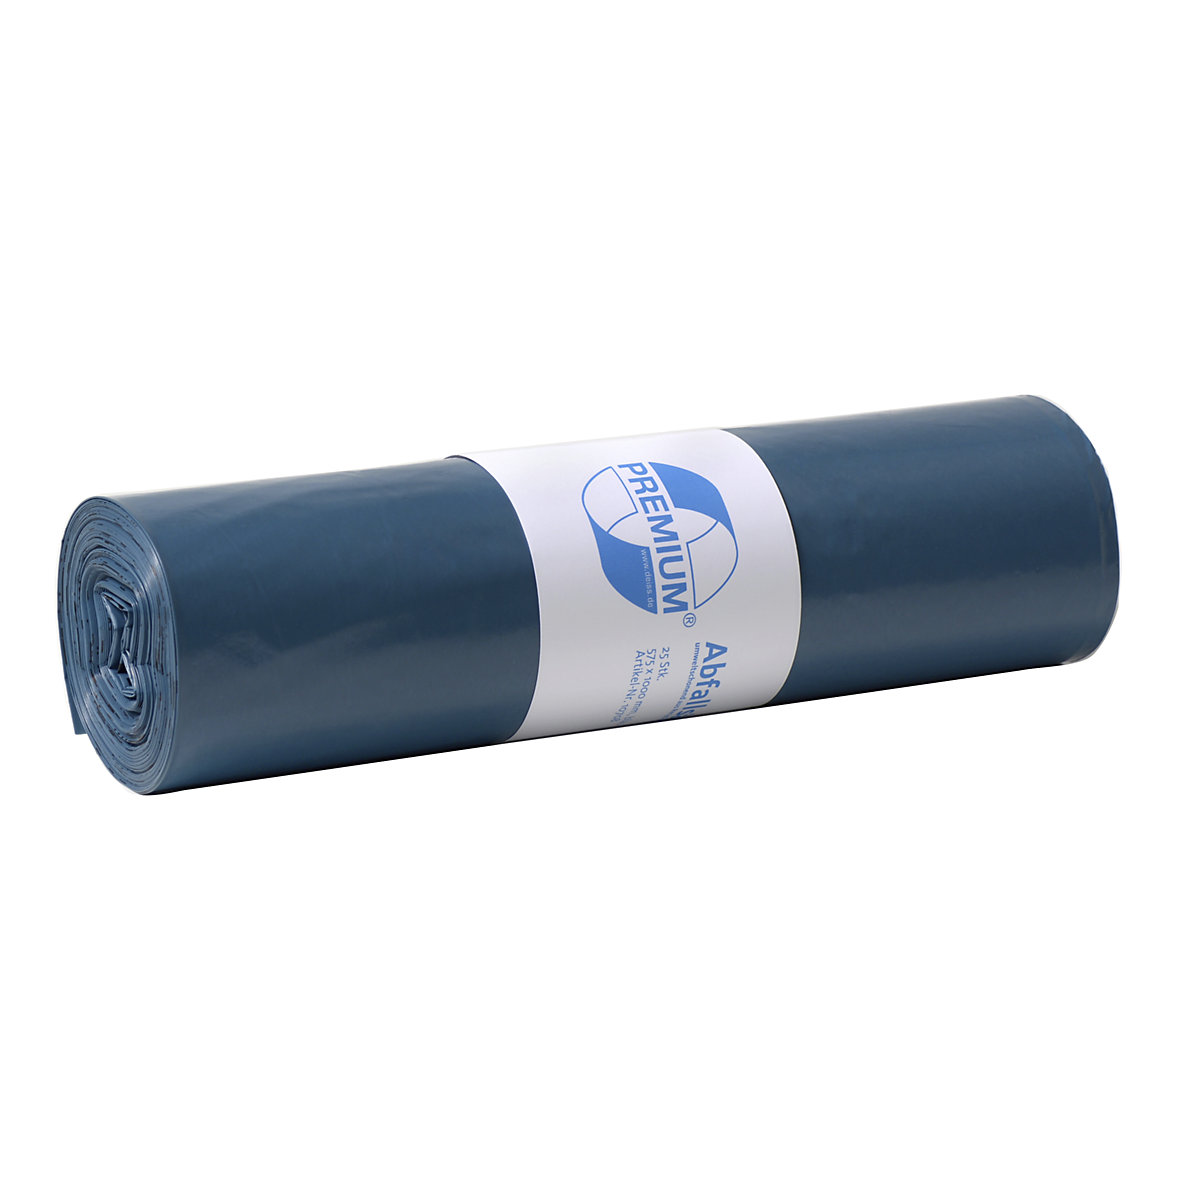 Standardní pytle na odpad, LDPE, 70 l, bal.j. 250 ks, š x v 575 x 1000 mm, tloušťka materiálu 60 µm, modrá